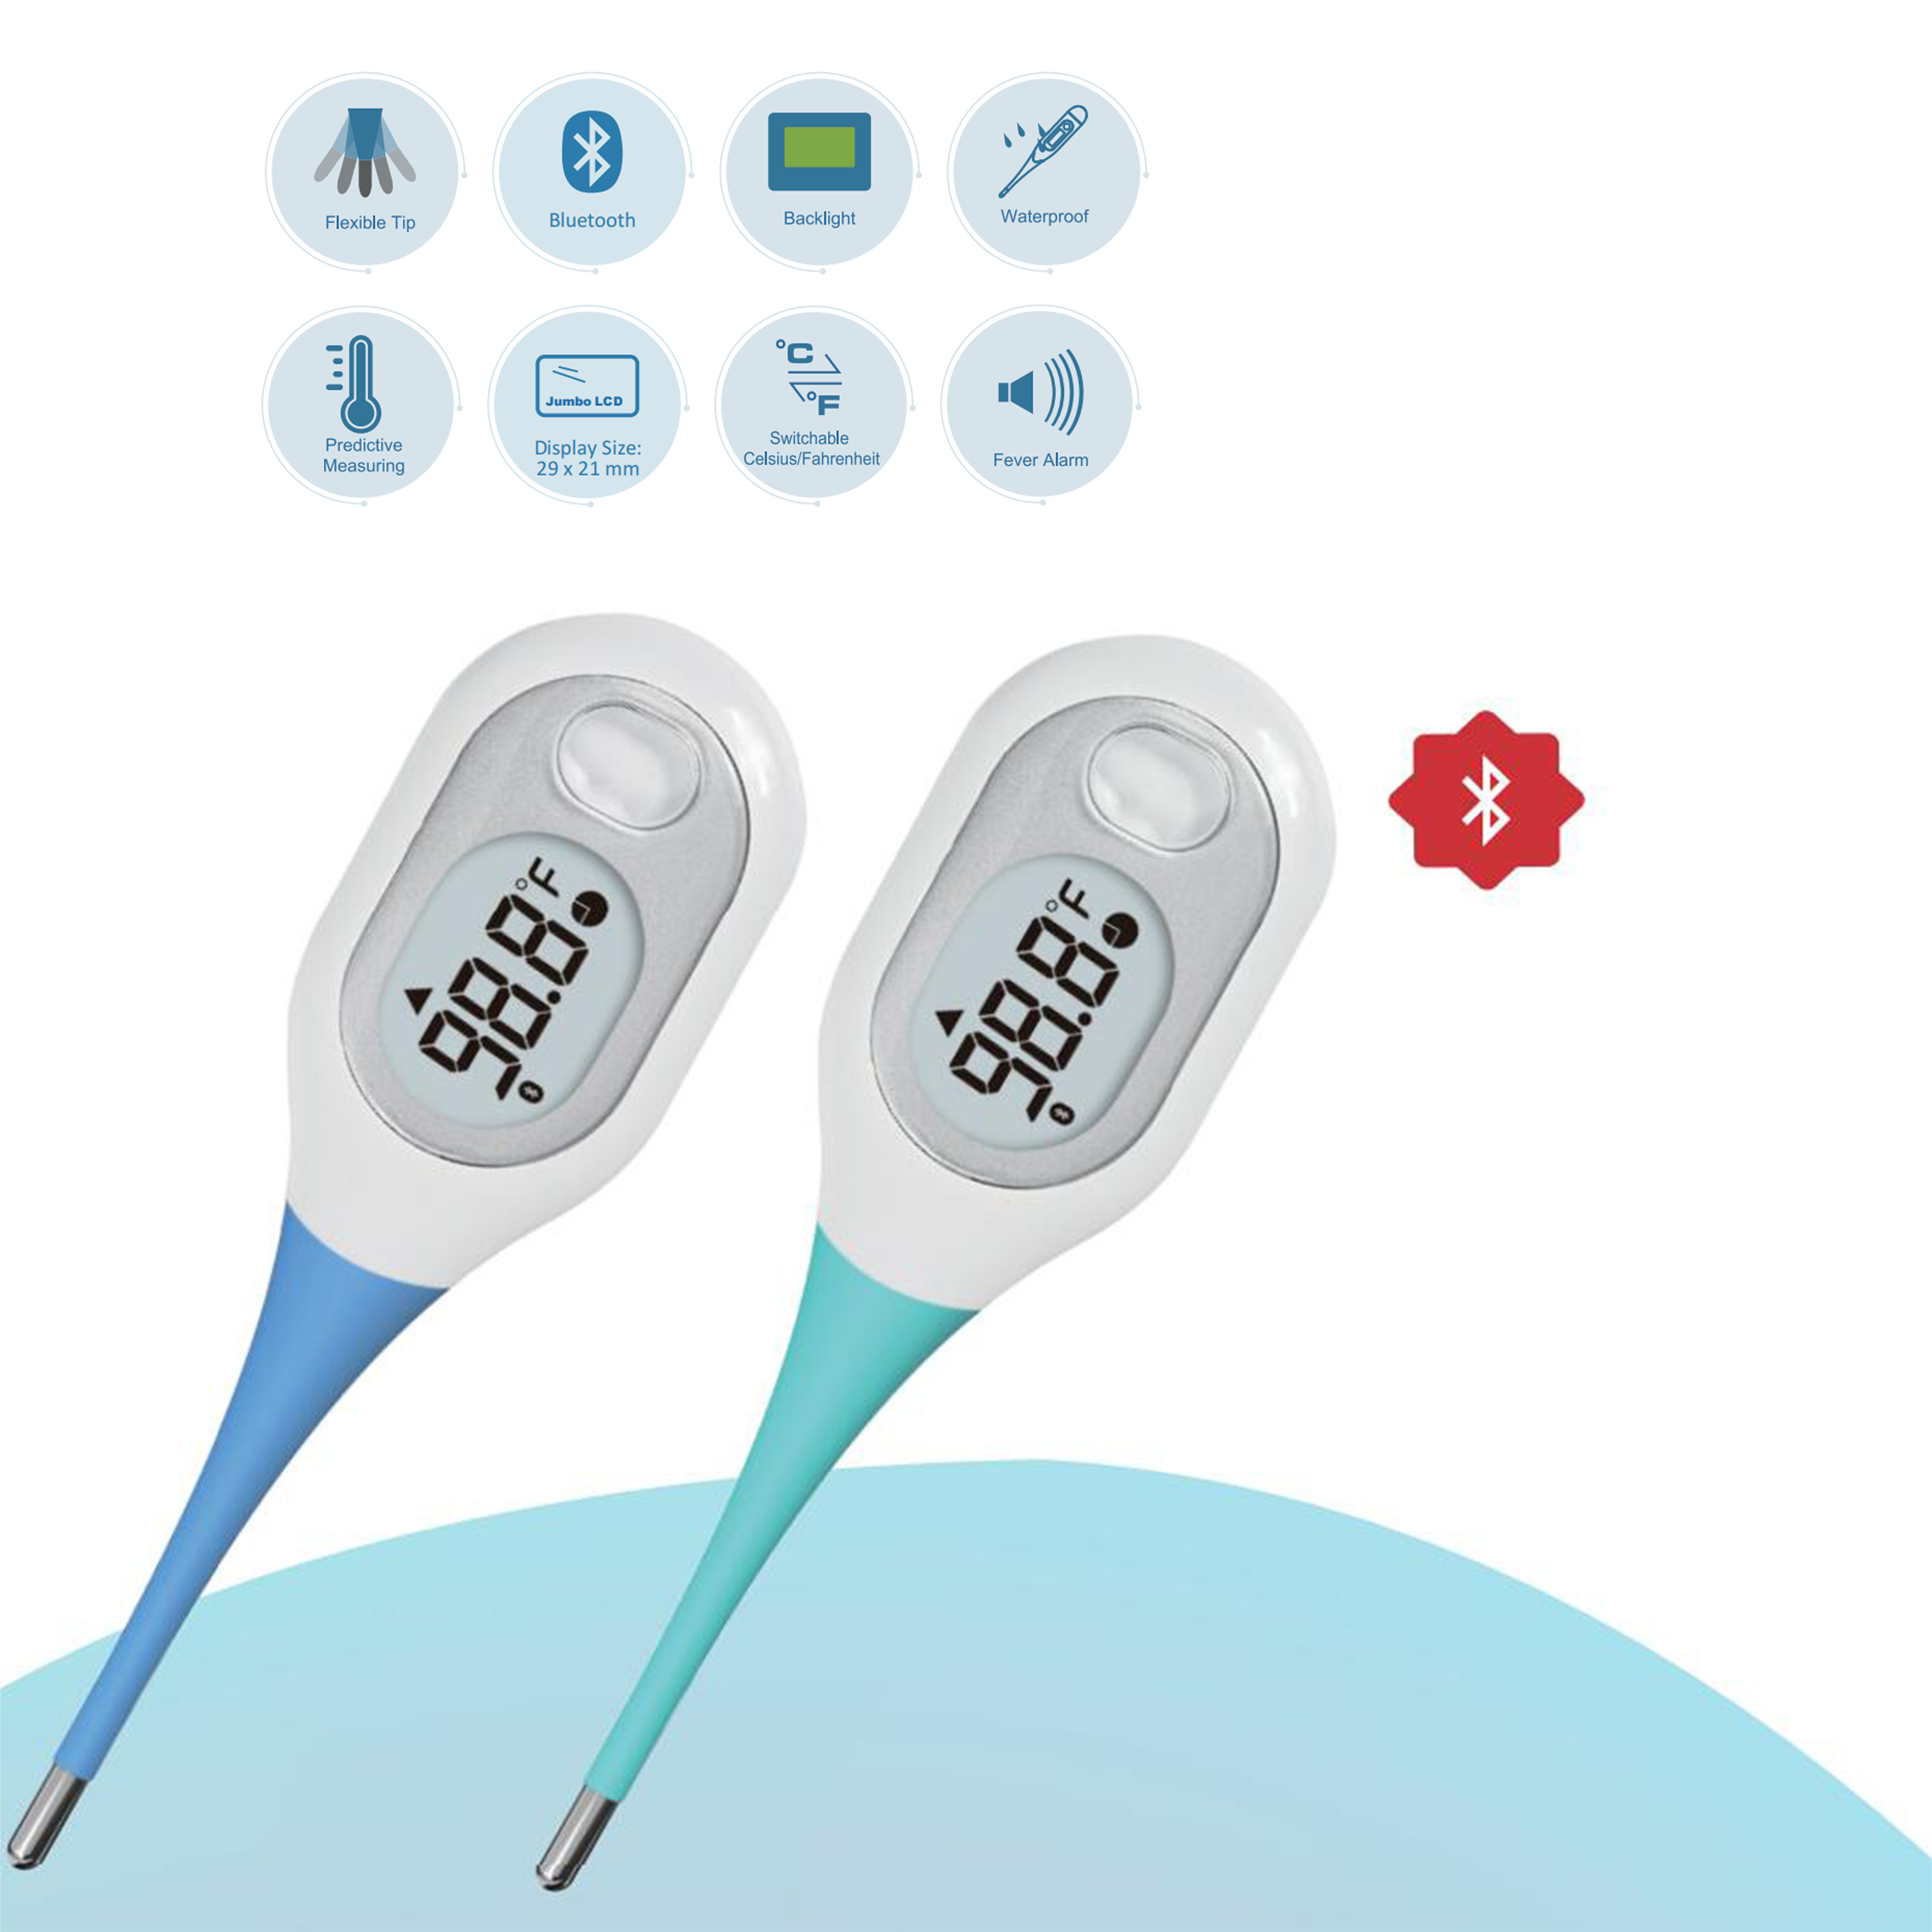 Čuvajući zdravlje, naš elektronski termometar vas prati